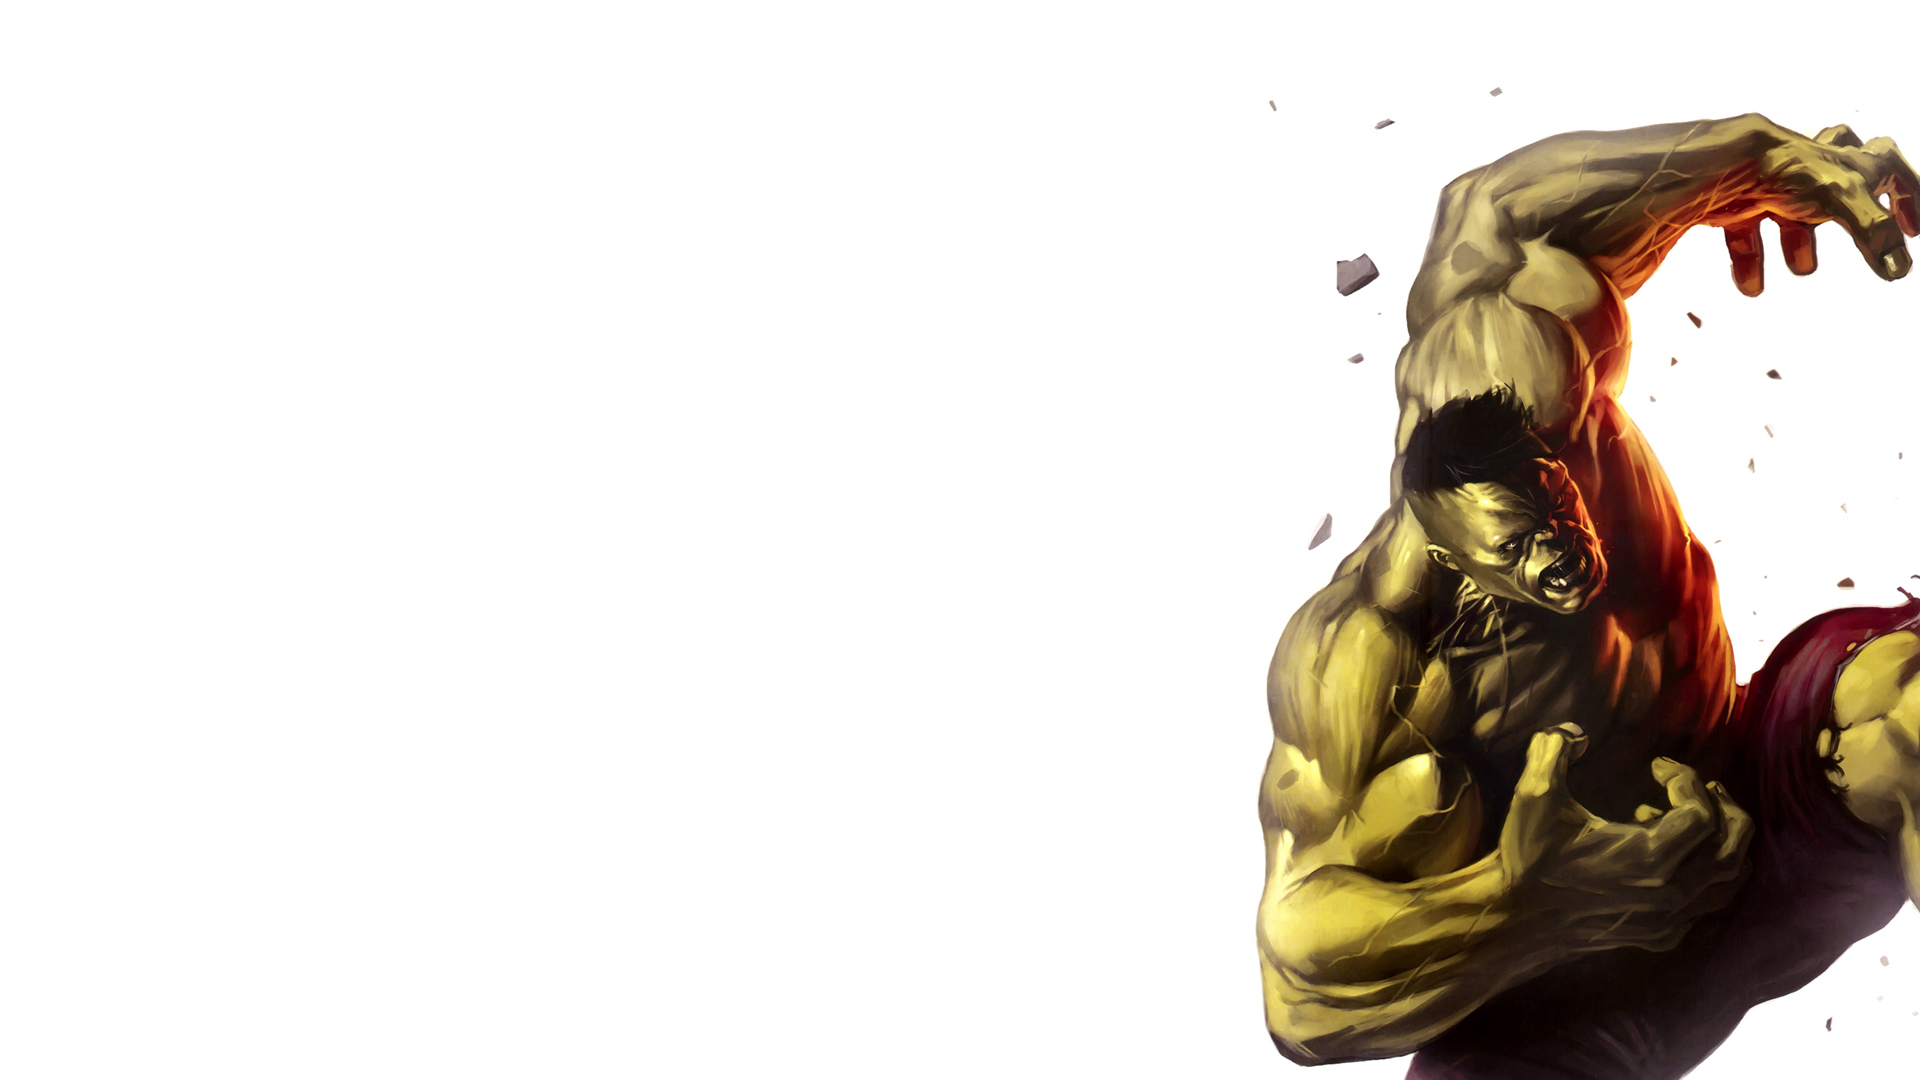 Hulk (comic character), comics, Marvel Comics - desktop wallpaper